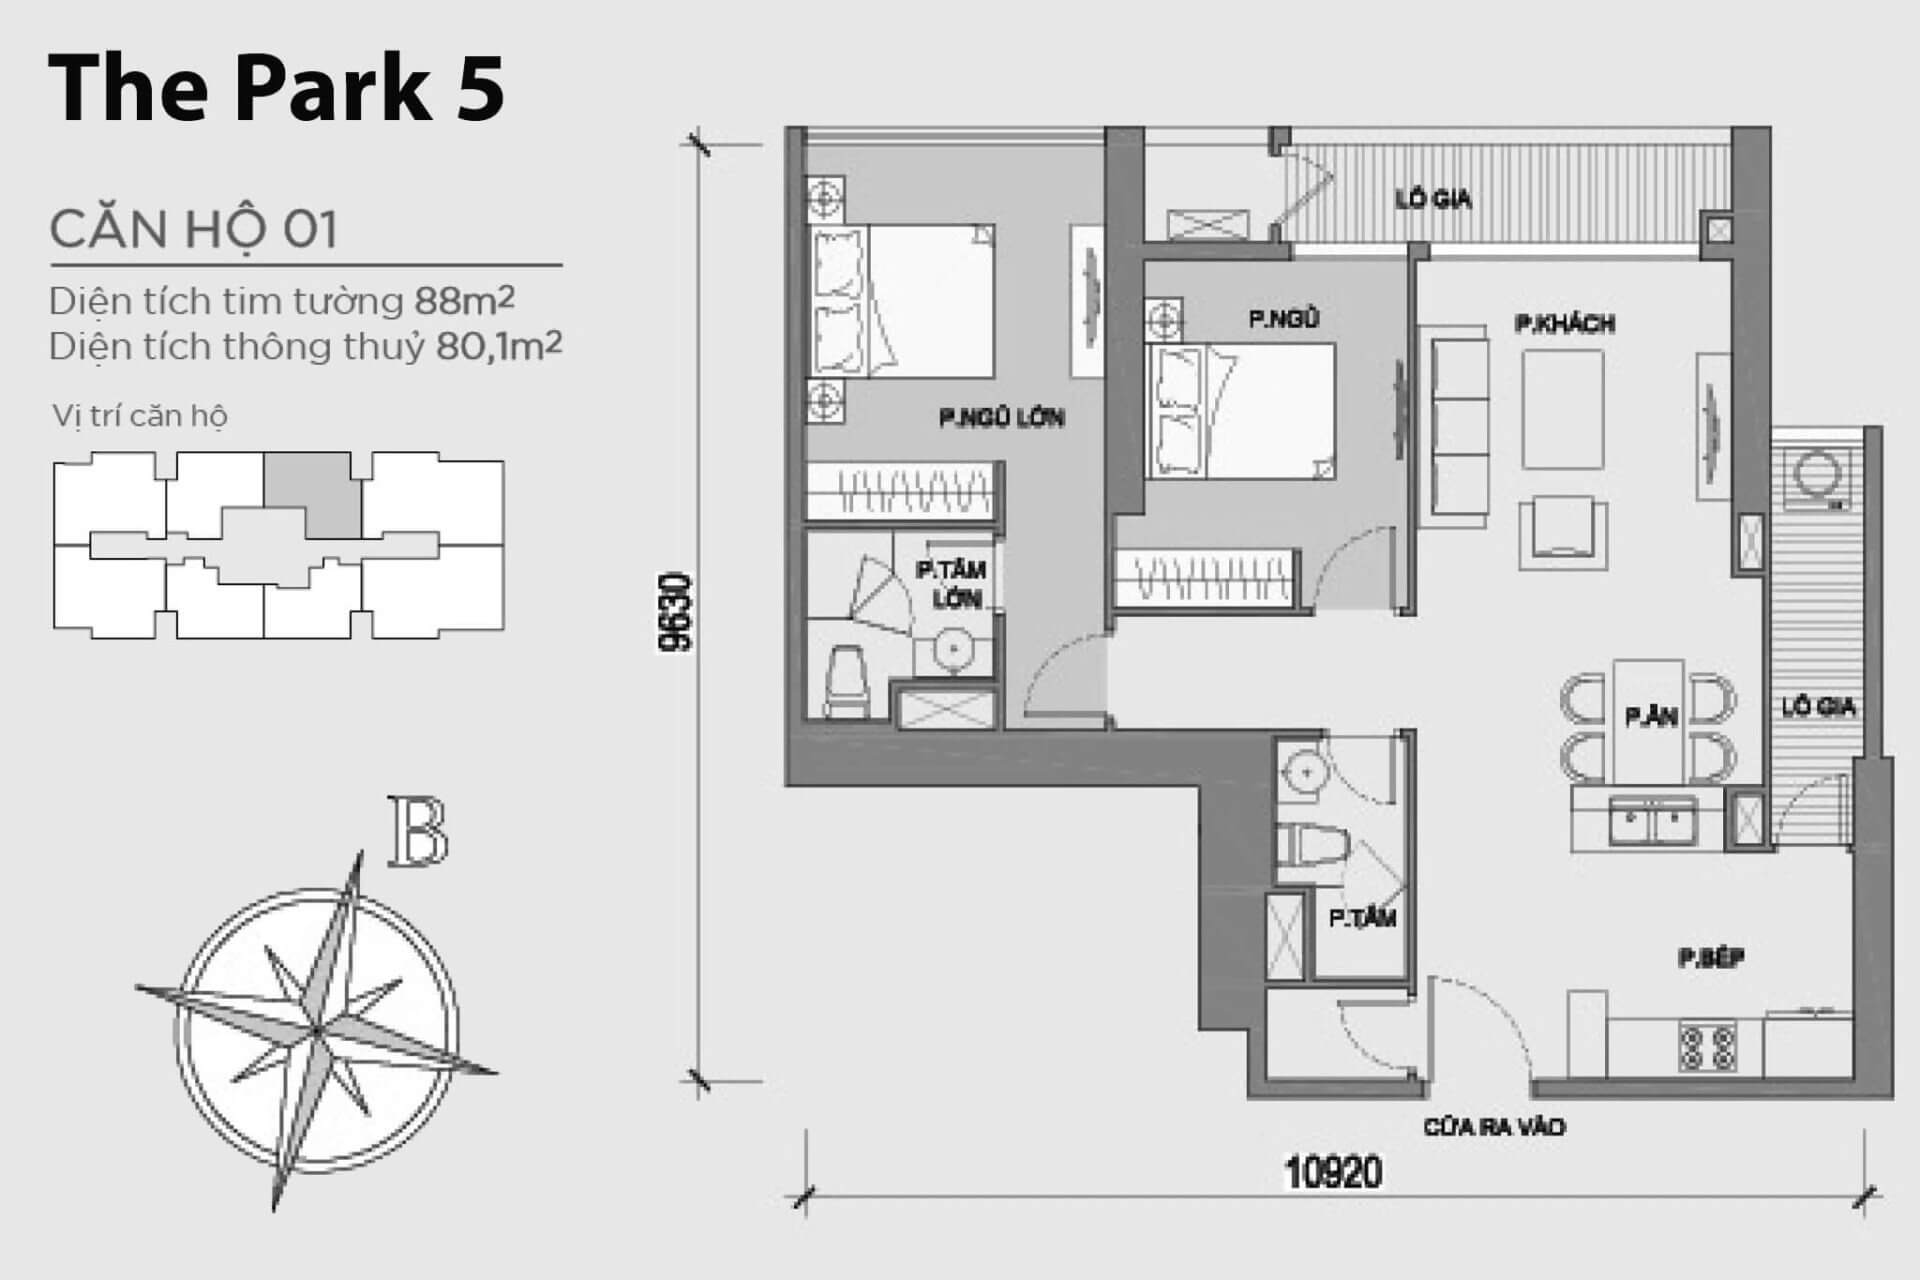 mặt bằng layout Park 5 căn hộ số 01 Vinhomes Central Park